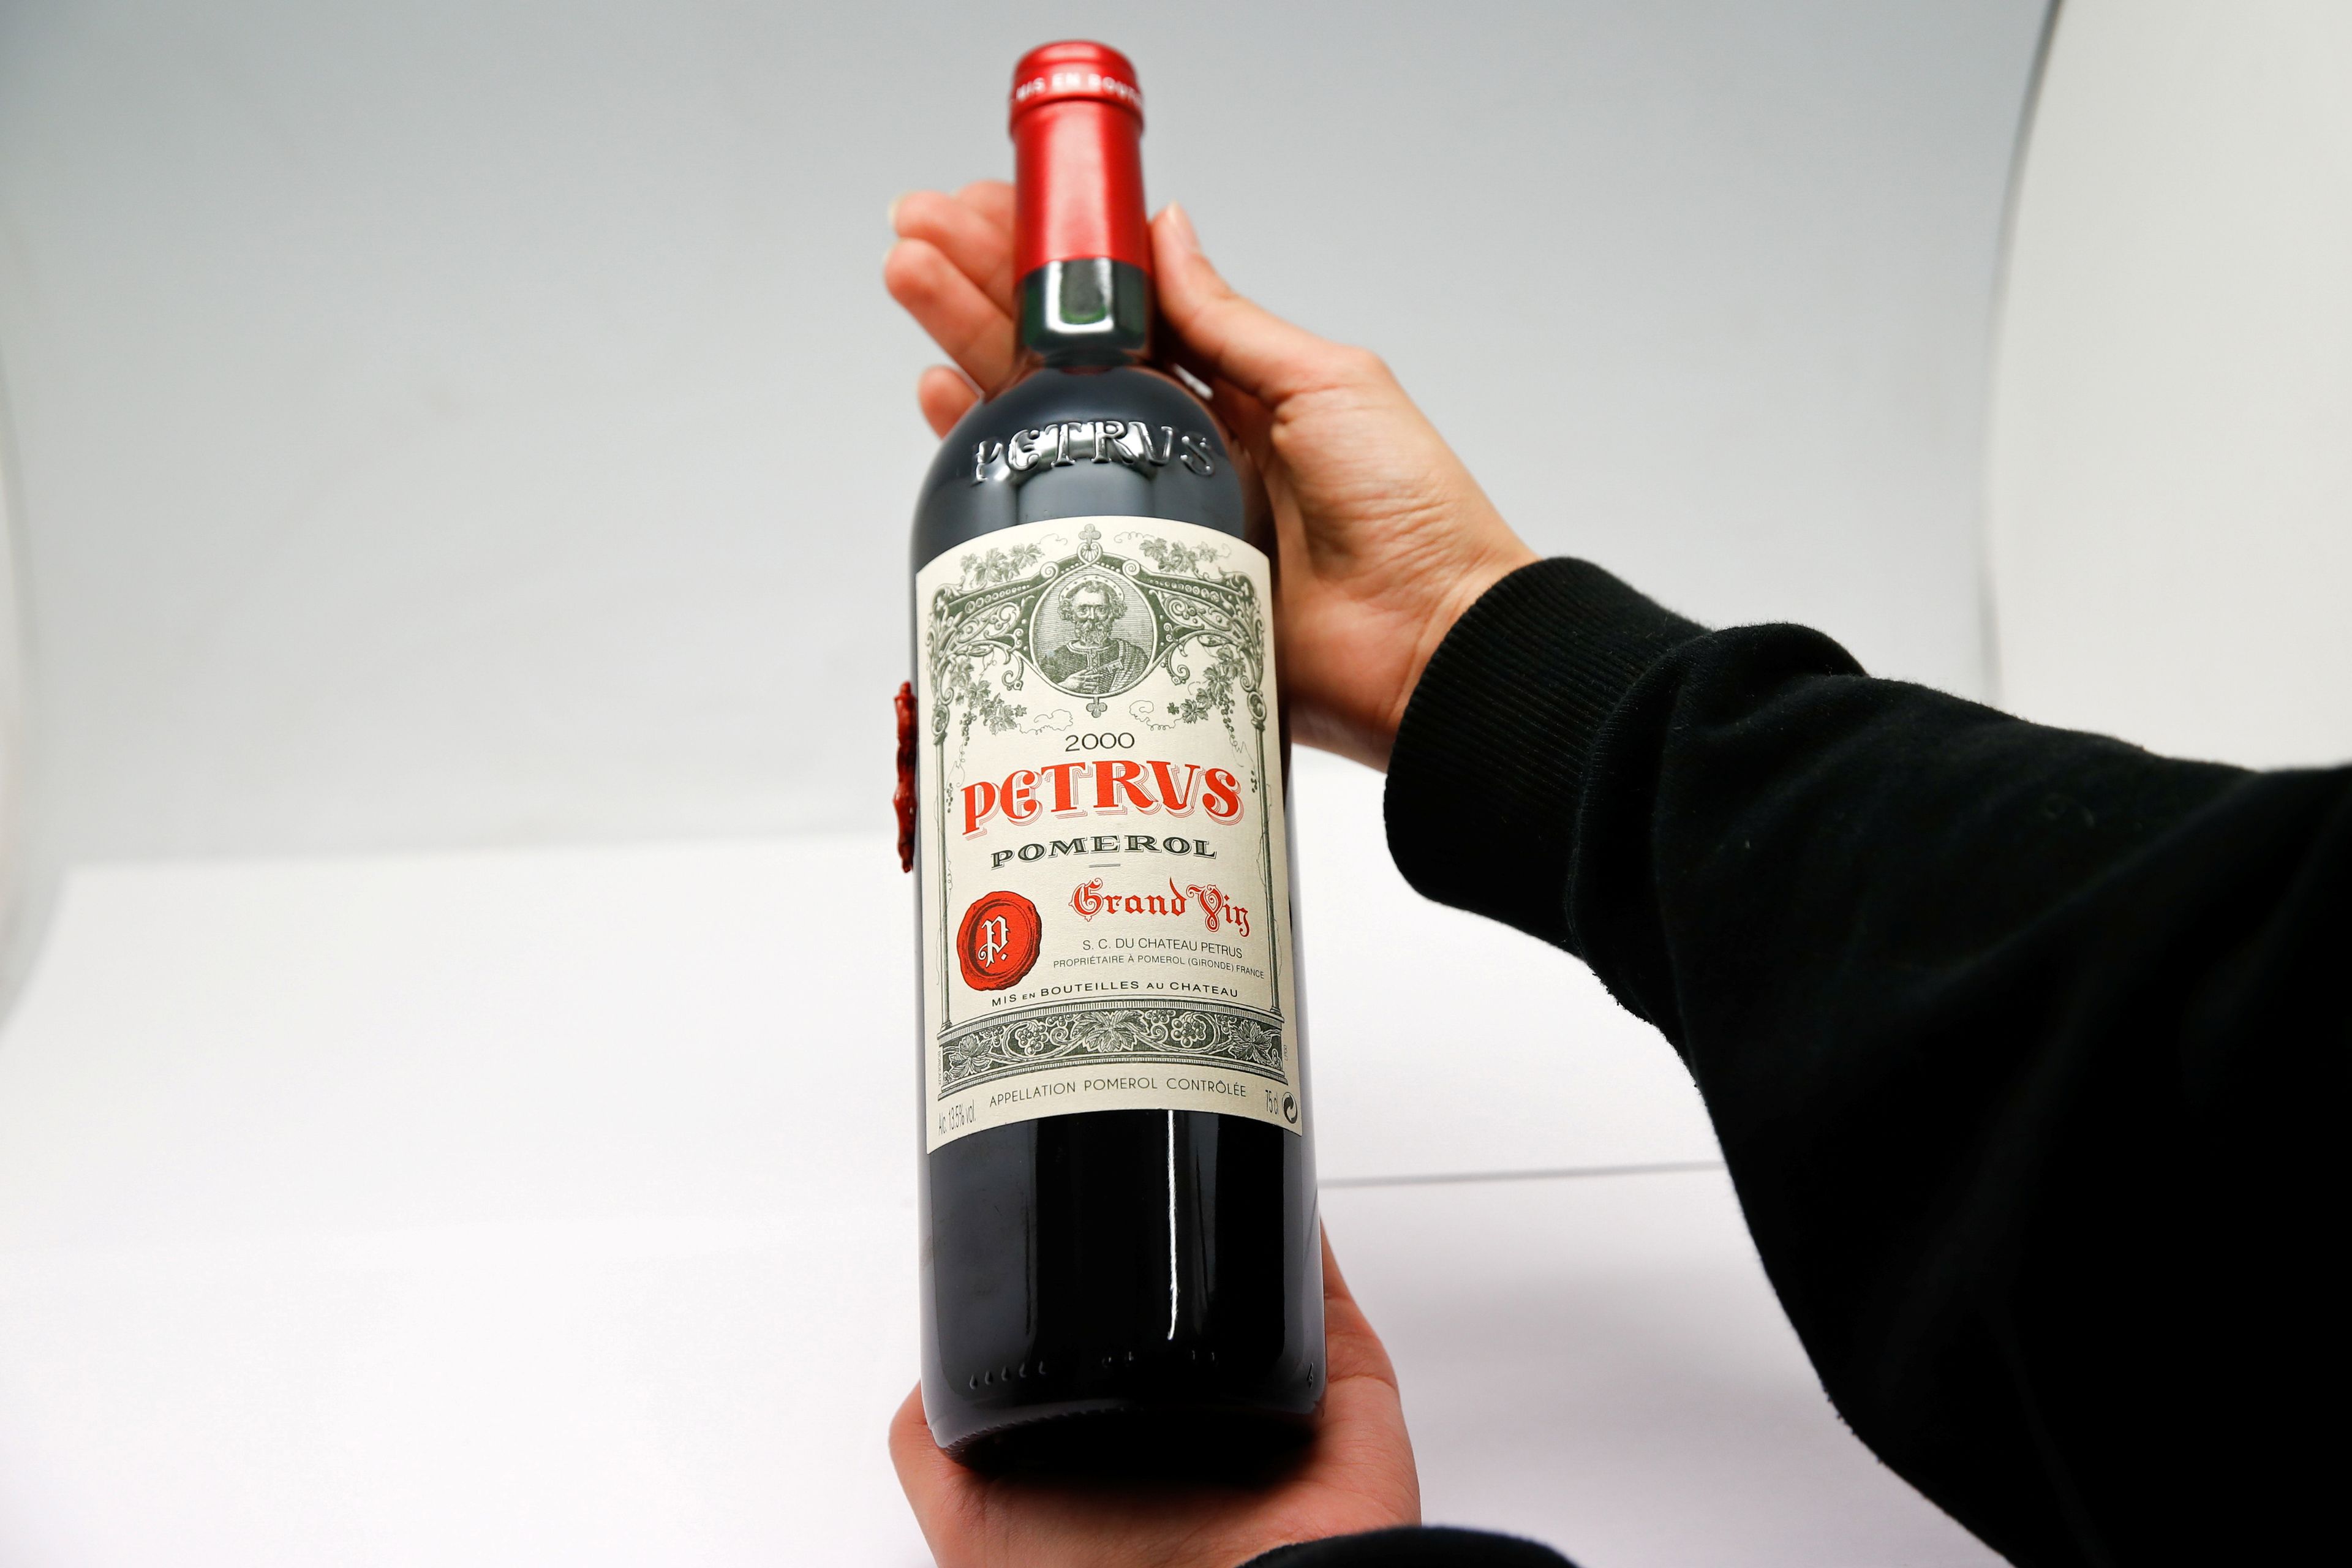 Botella Petrus 2000, un vino francés madurado en la Estación Espacial Internacional durante 14 meses.